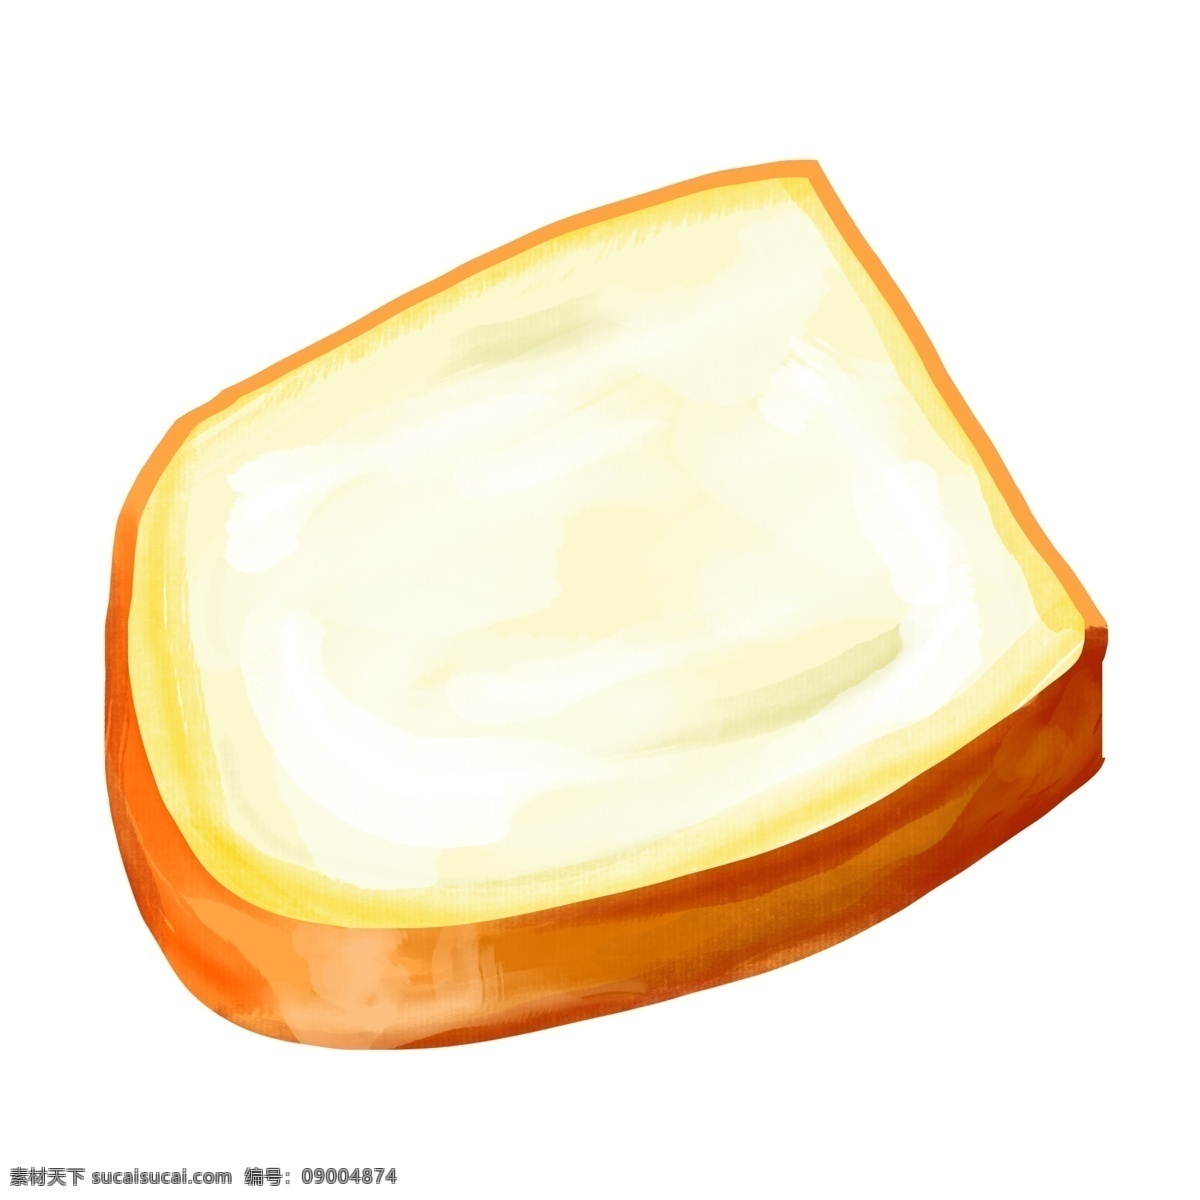 漂亮 面包 装饰 插画 黄色的面包 漂亮的面包 创意面包 立体面包 卡通面包 精美面包 营养面包